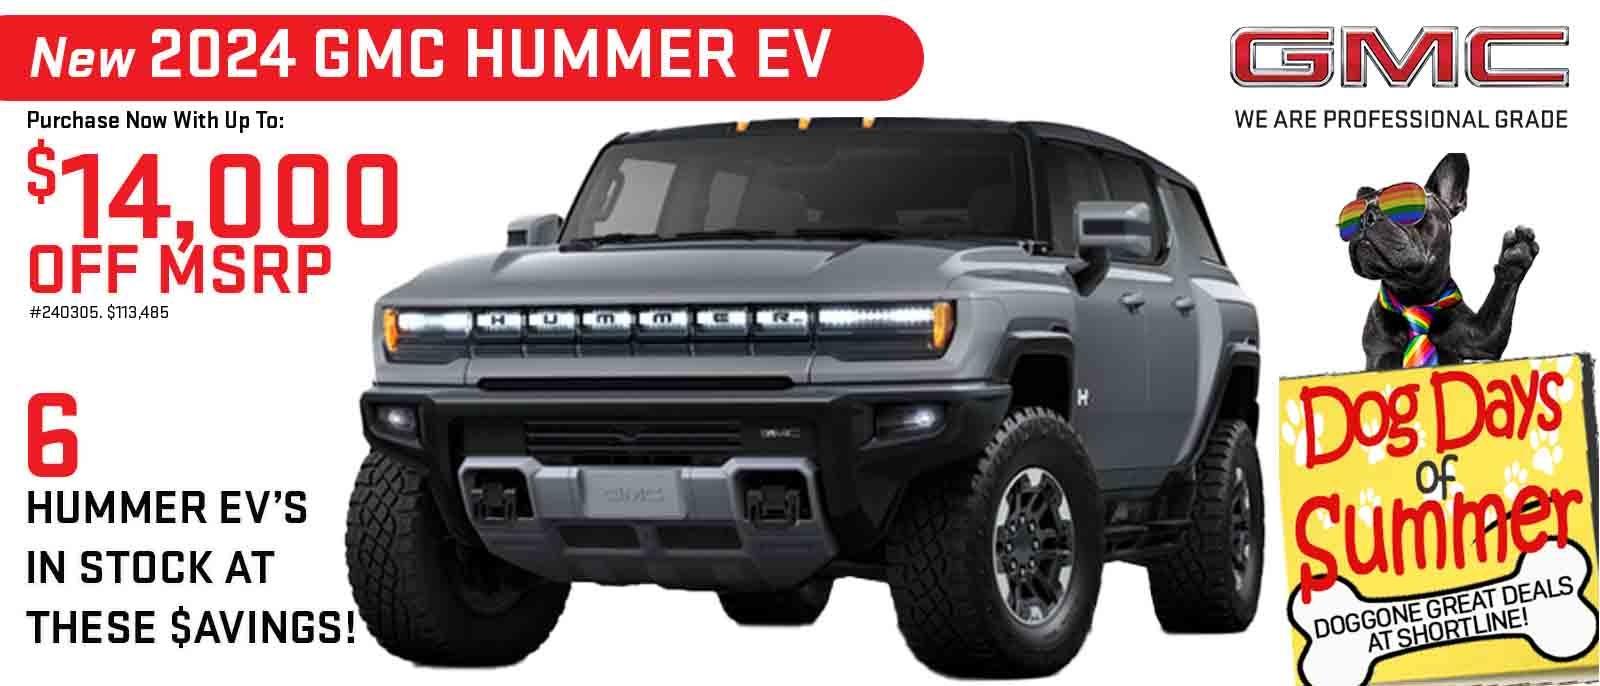 View GMC Hummer EV Special in Denver at Shortline